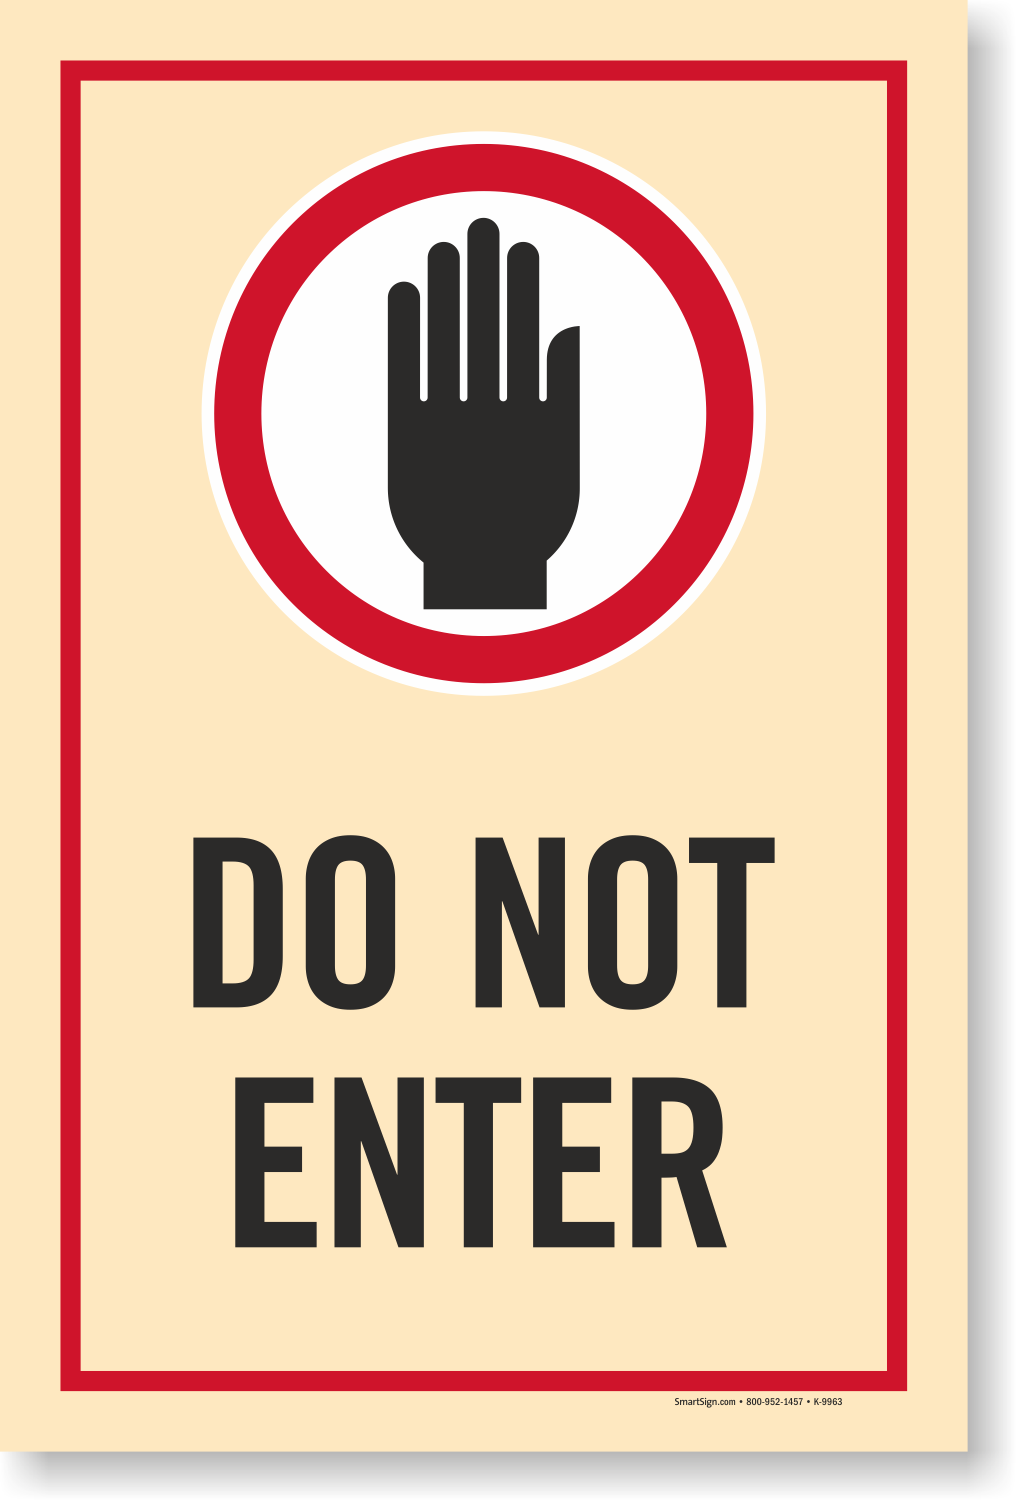 Do Not Enter Sign - Bank2home.com